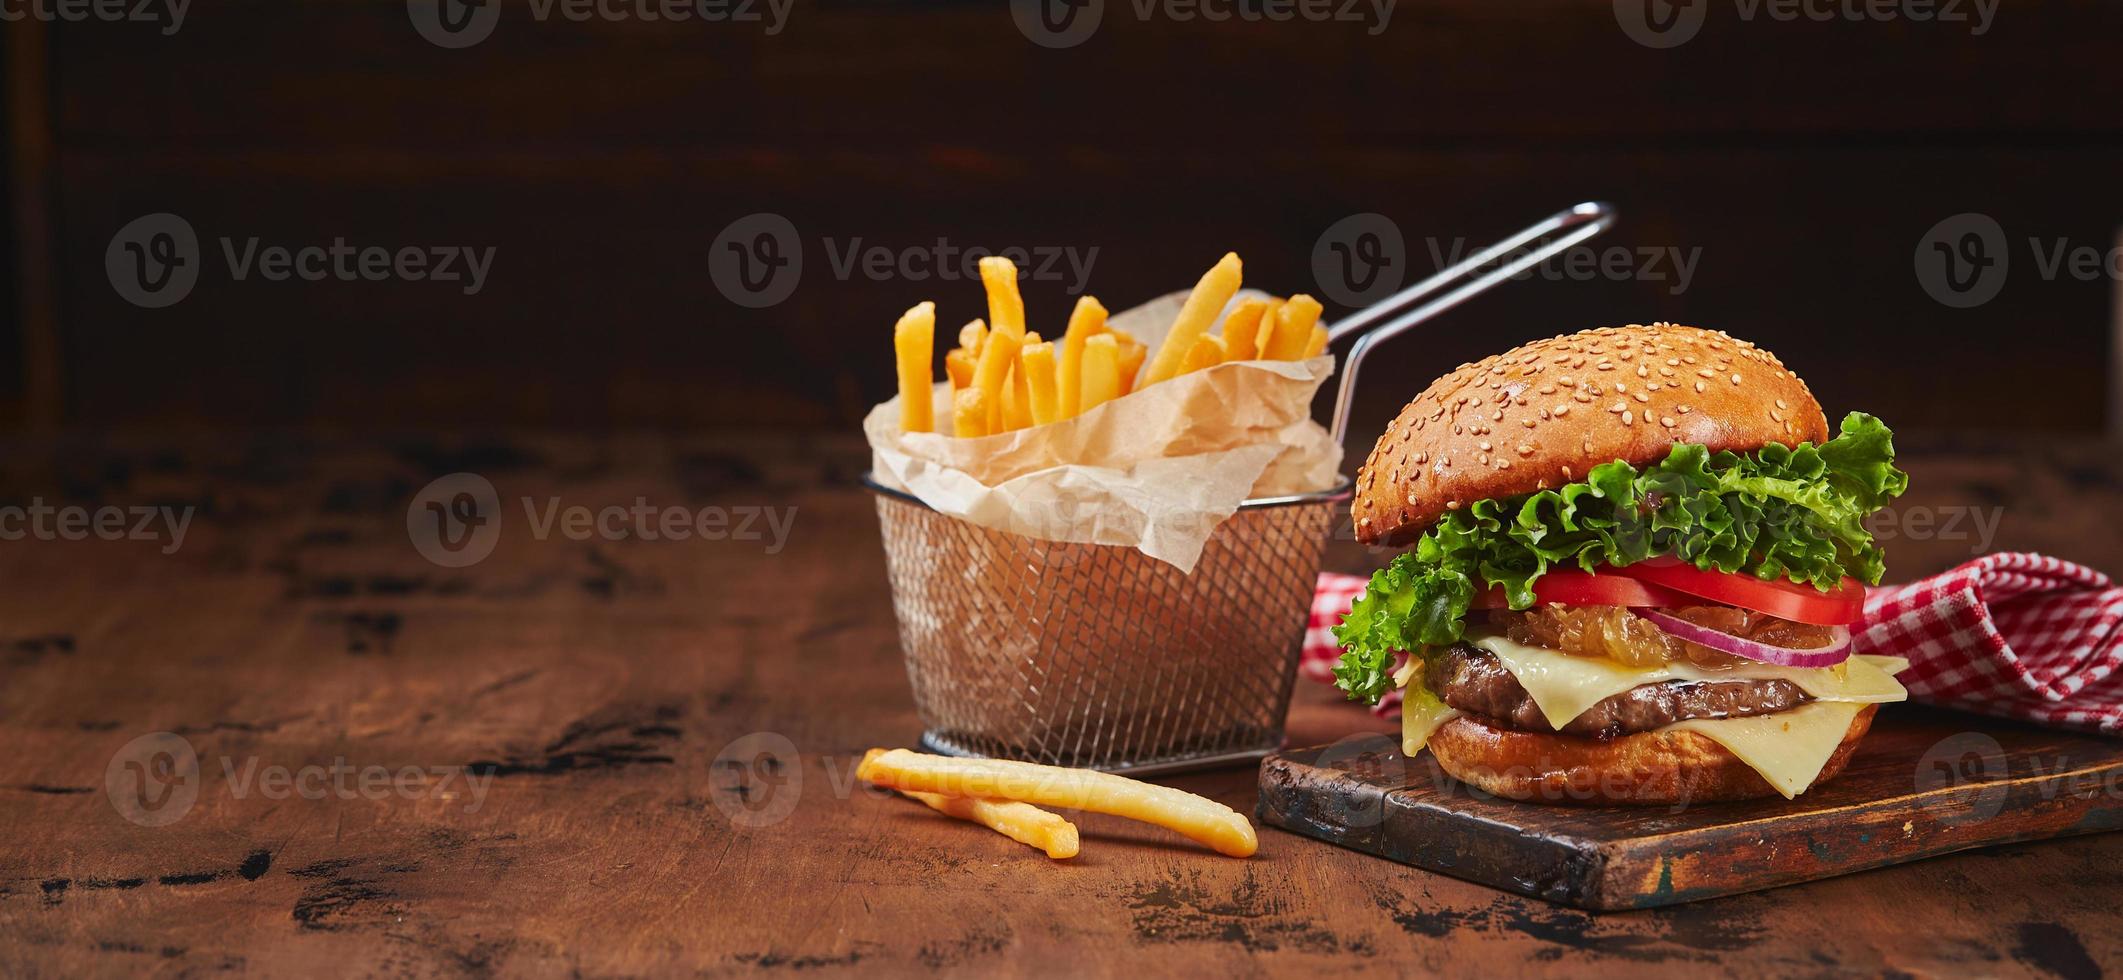 hemlagad burger med nötkött, ost och lök marmelad på en trä- styrelse, frites i en metall korg. snabb mat begrepp, amerikan mat foto